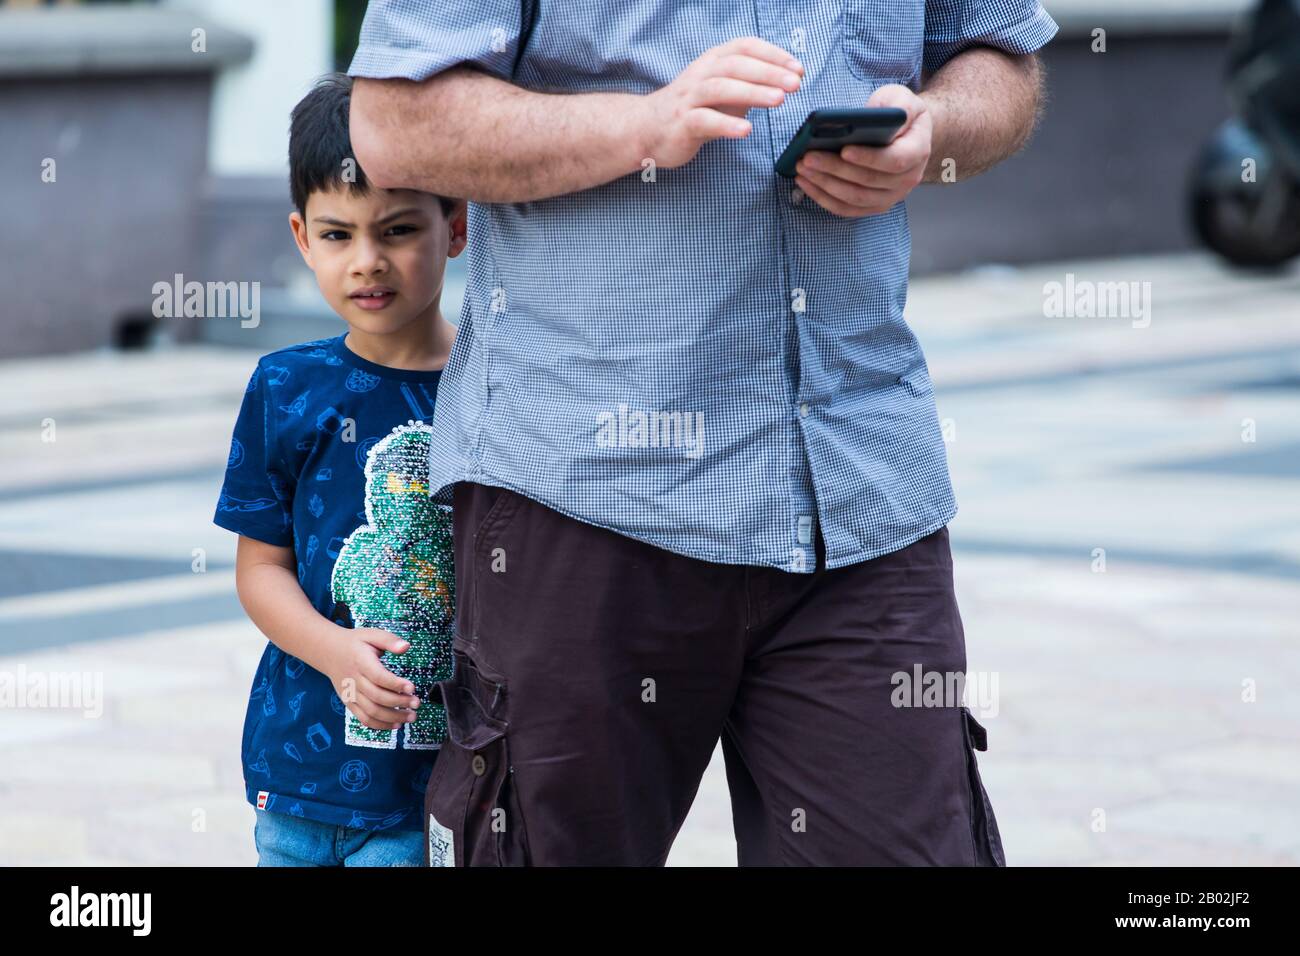 Un jeune garçon arabe timide essaie de se cacher derrière son père alors que l'homme ou probablement son père est occupé sur son téléphone portable. Banque D'Images